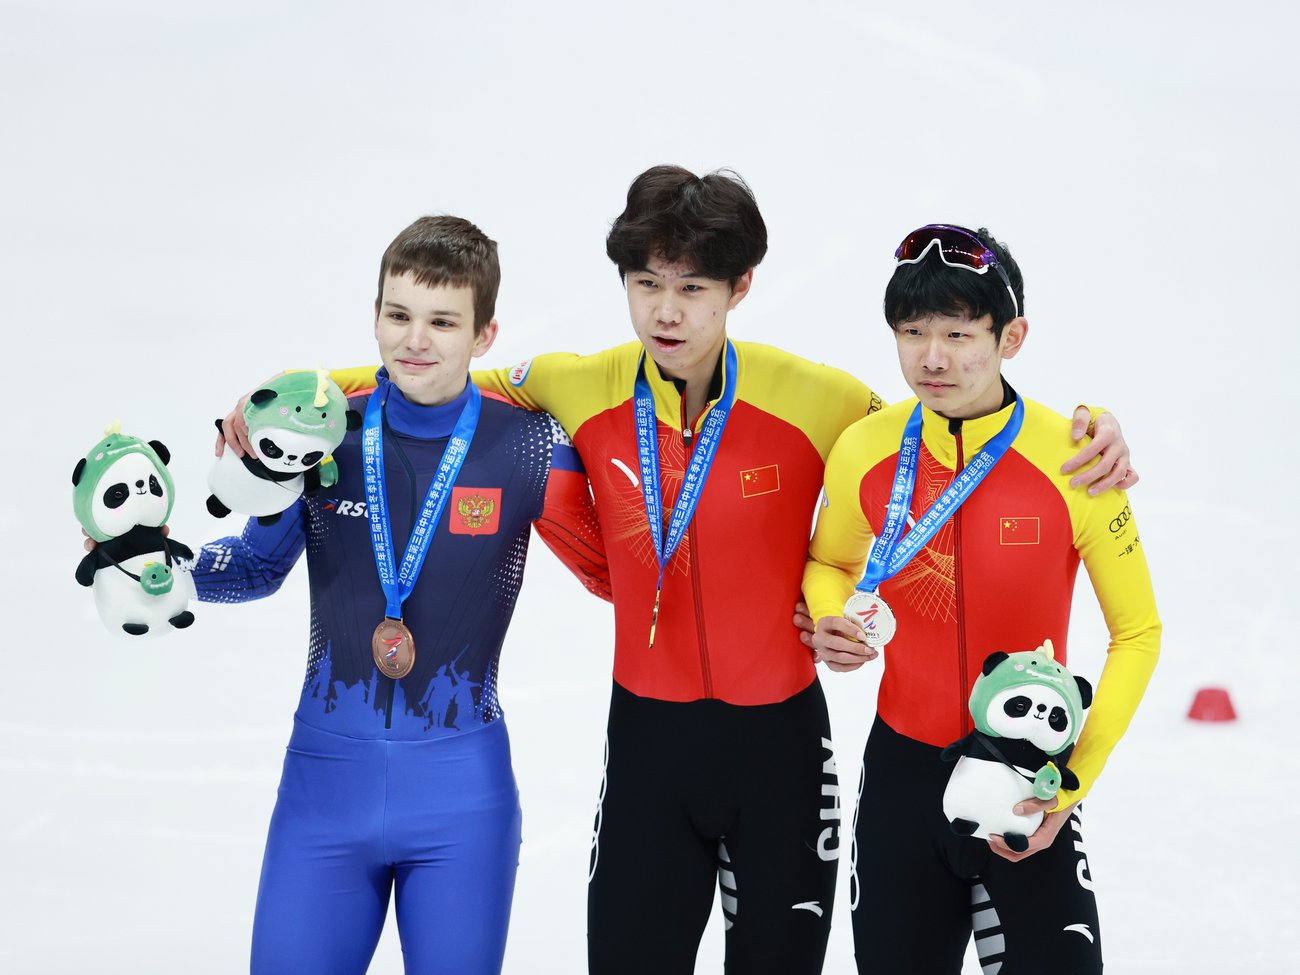 III зимние Российско-Китайские молодёжные игры 2022